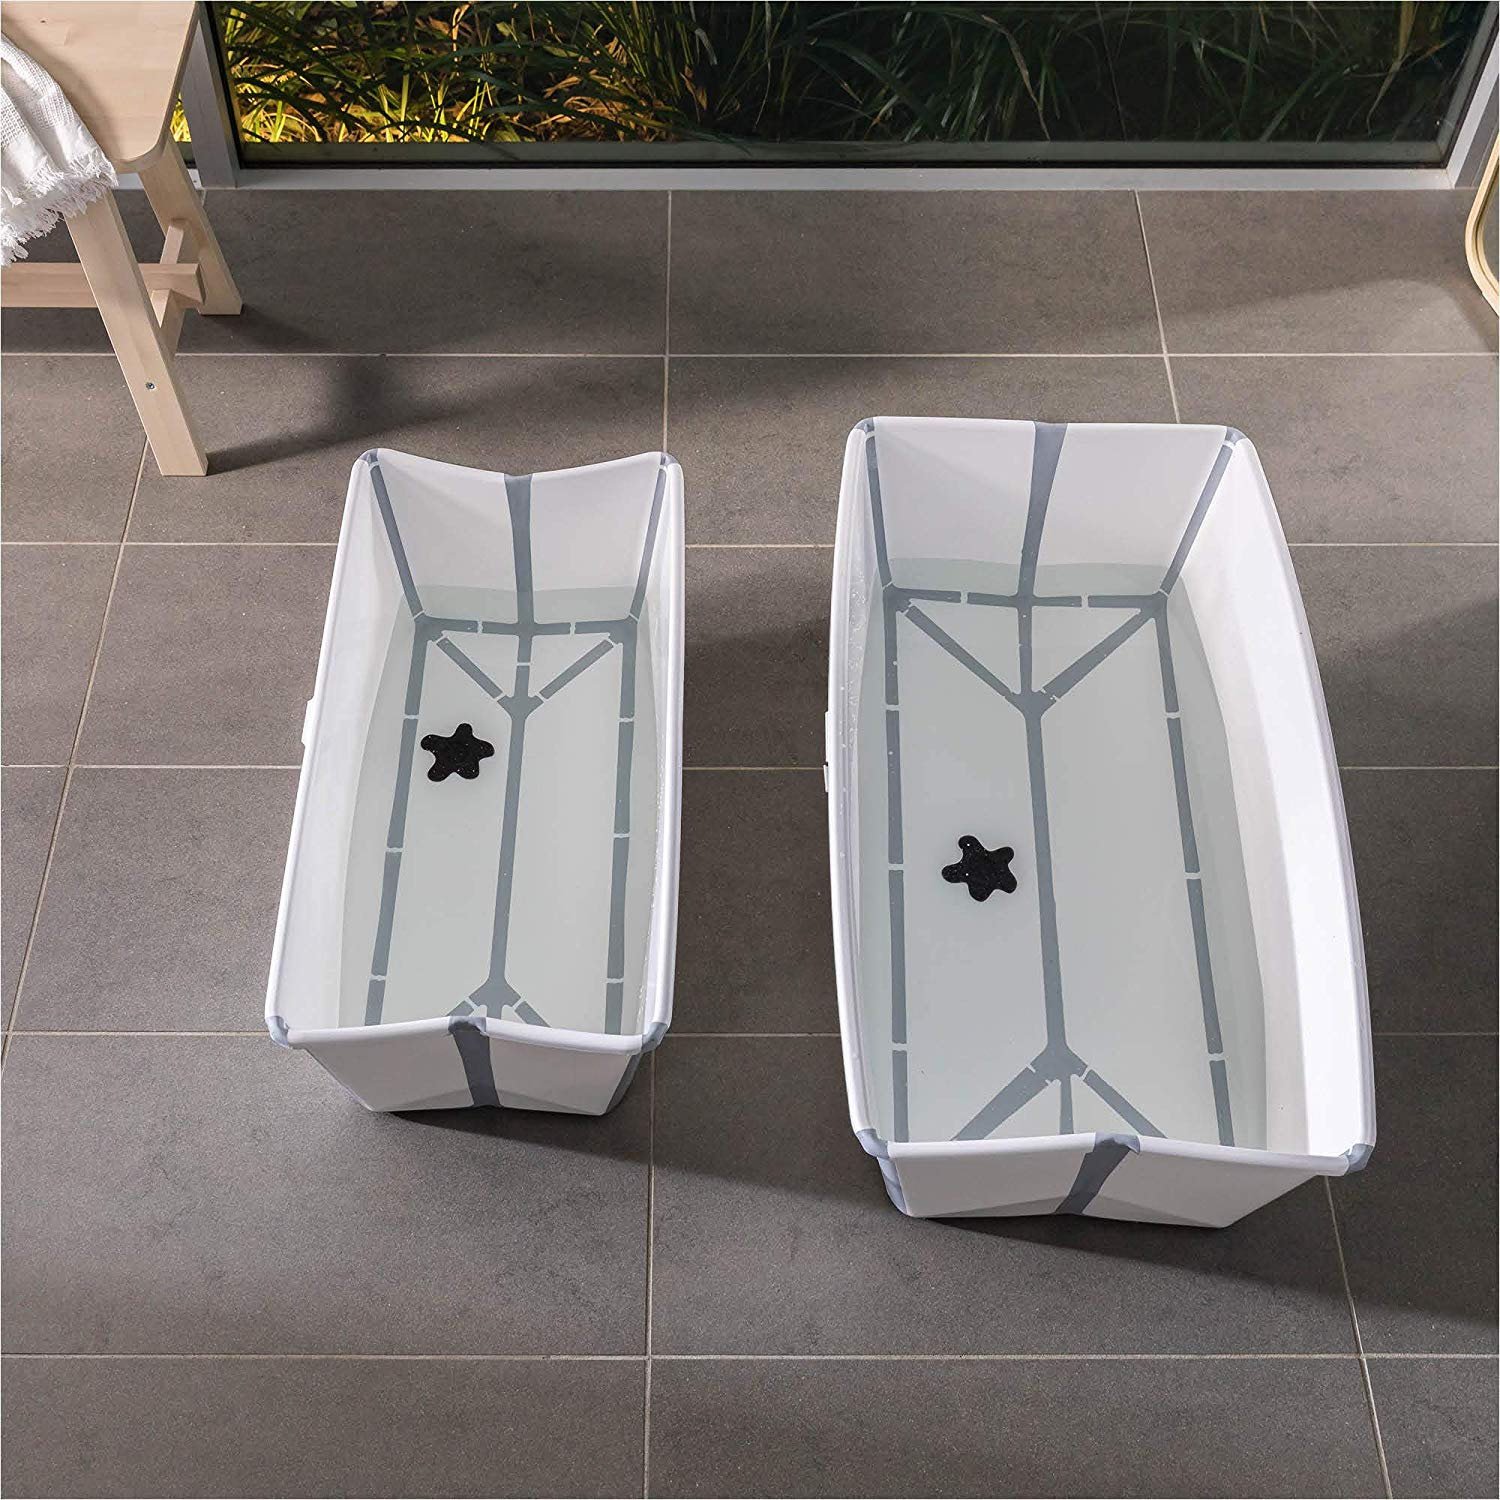 Baignoire Flexi Bath™ XL Transparent Bleu de Stokke®, Baignoires Pliables :  Aubert